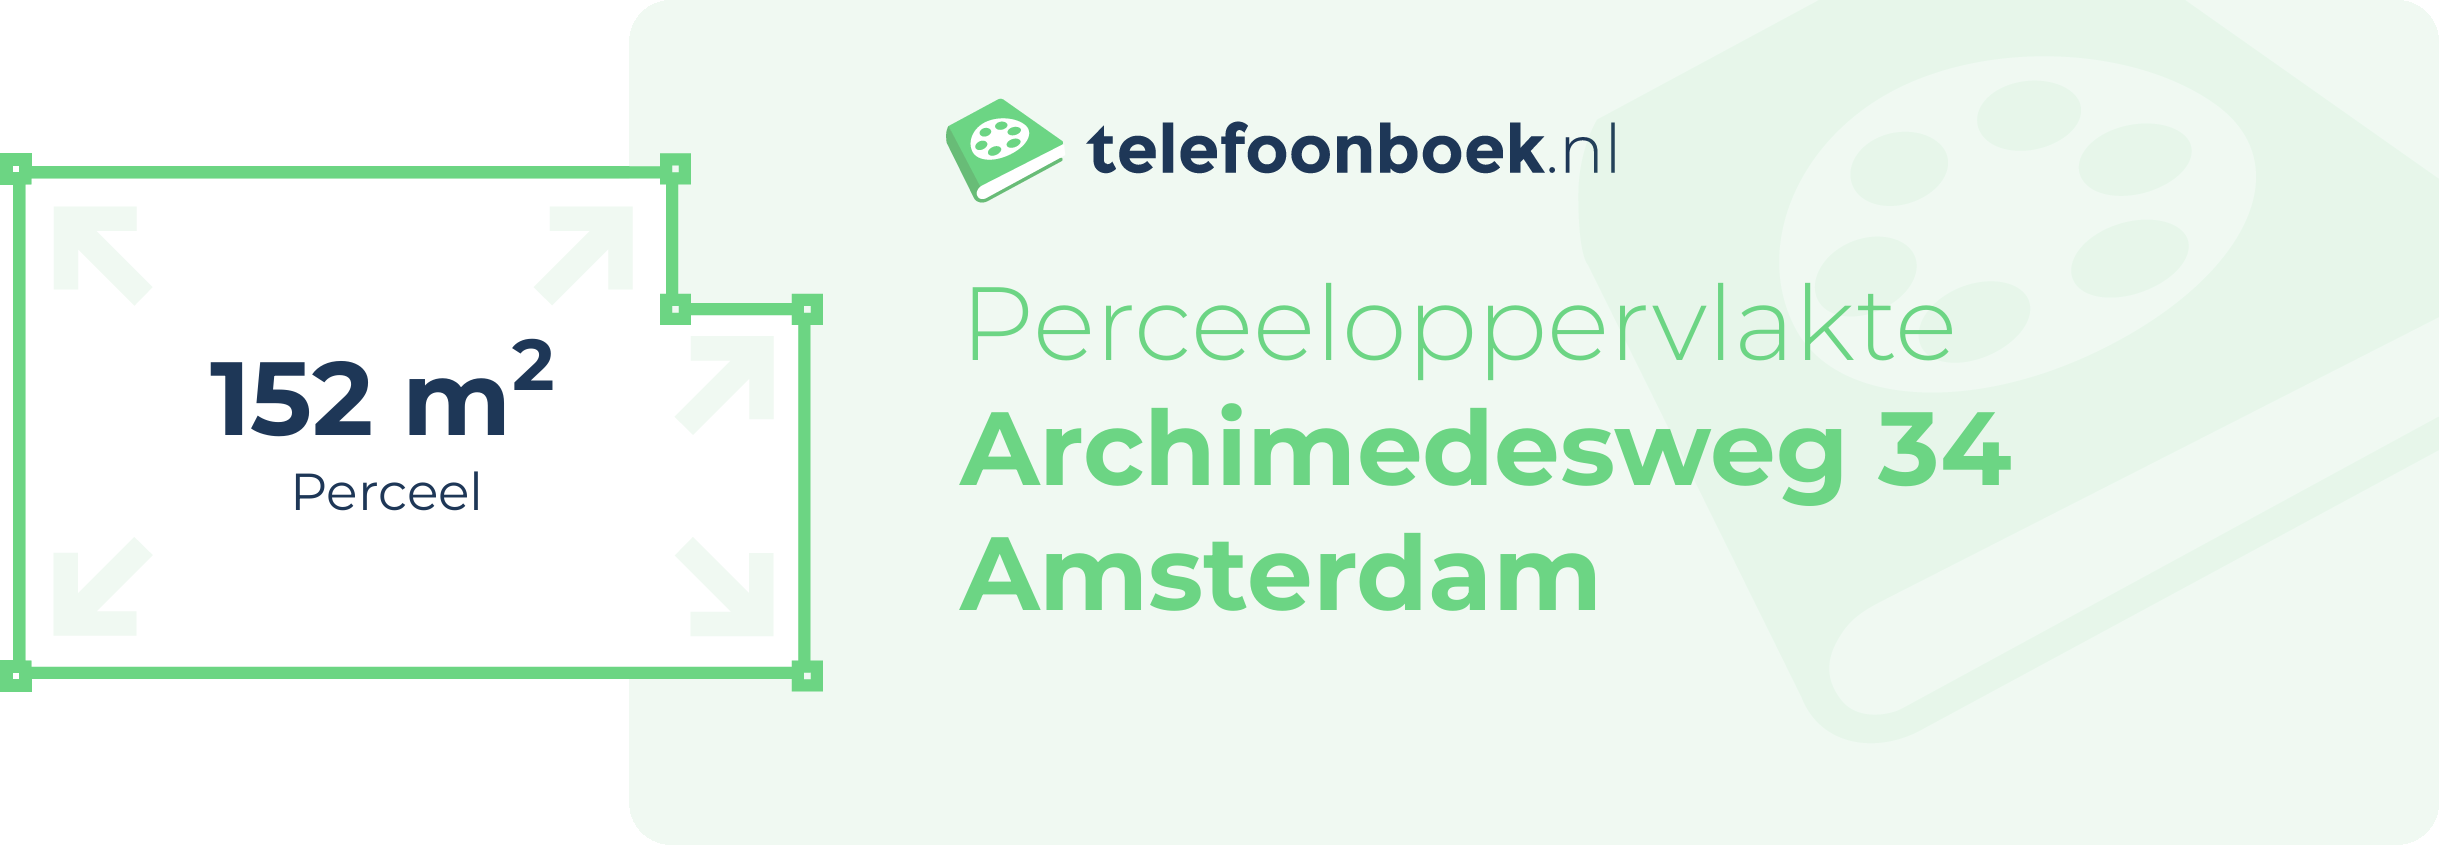 Perceeloppervlakte Archimedesweg 34 Amsterdam